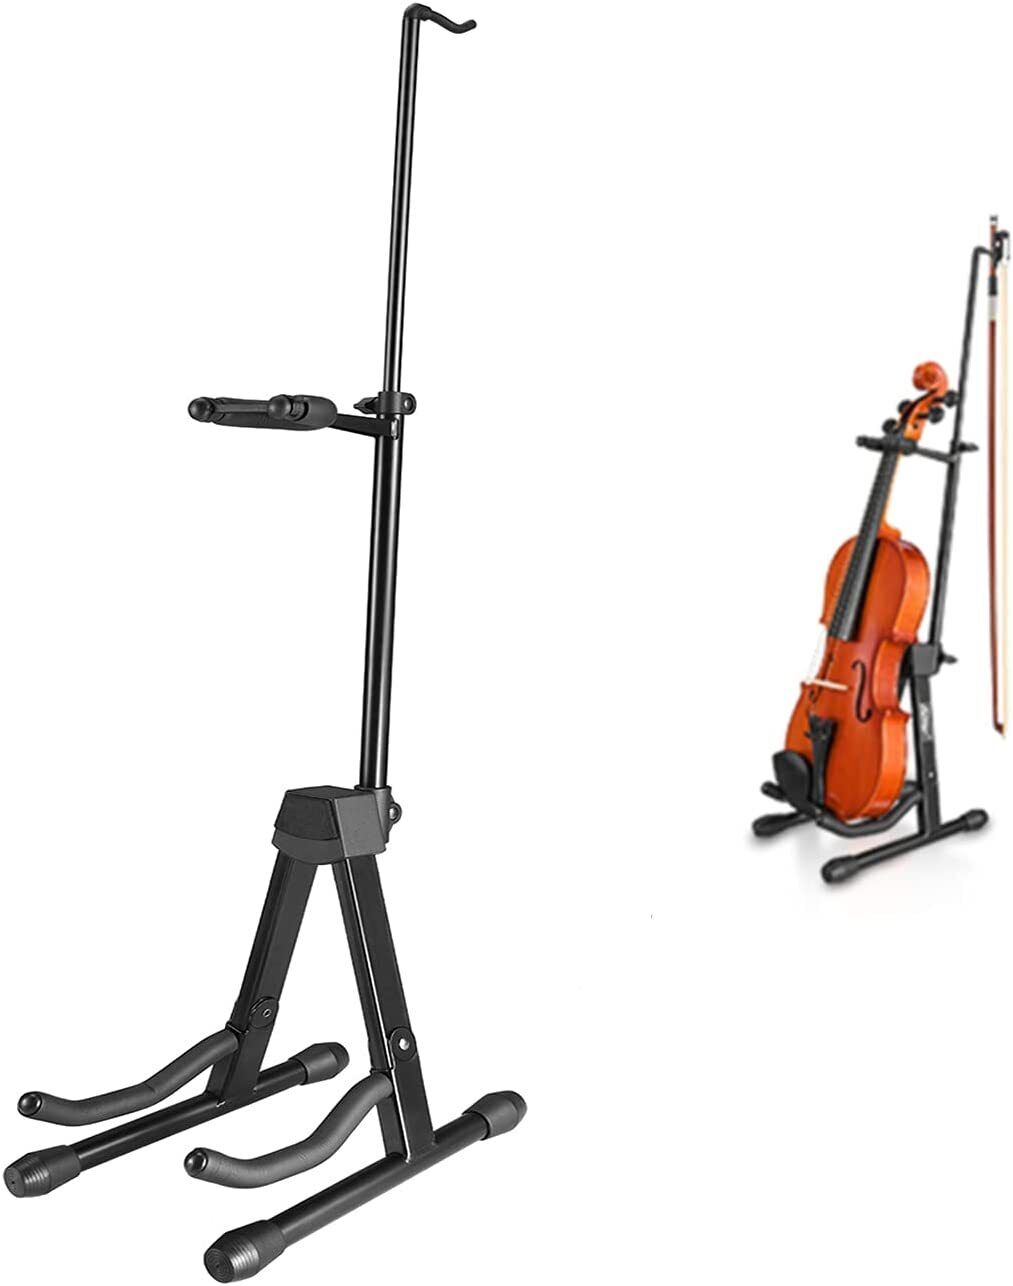 Eastar Est-006 Violin Stand Viola Stand W/ Bows Hook Holder Portable Adjustable